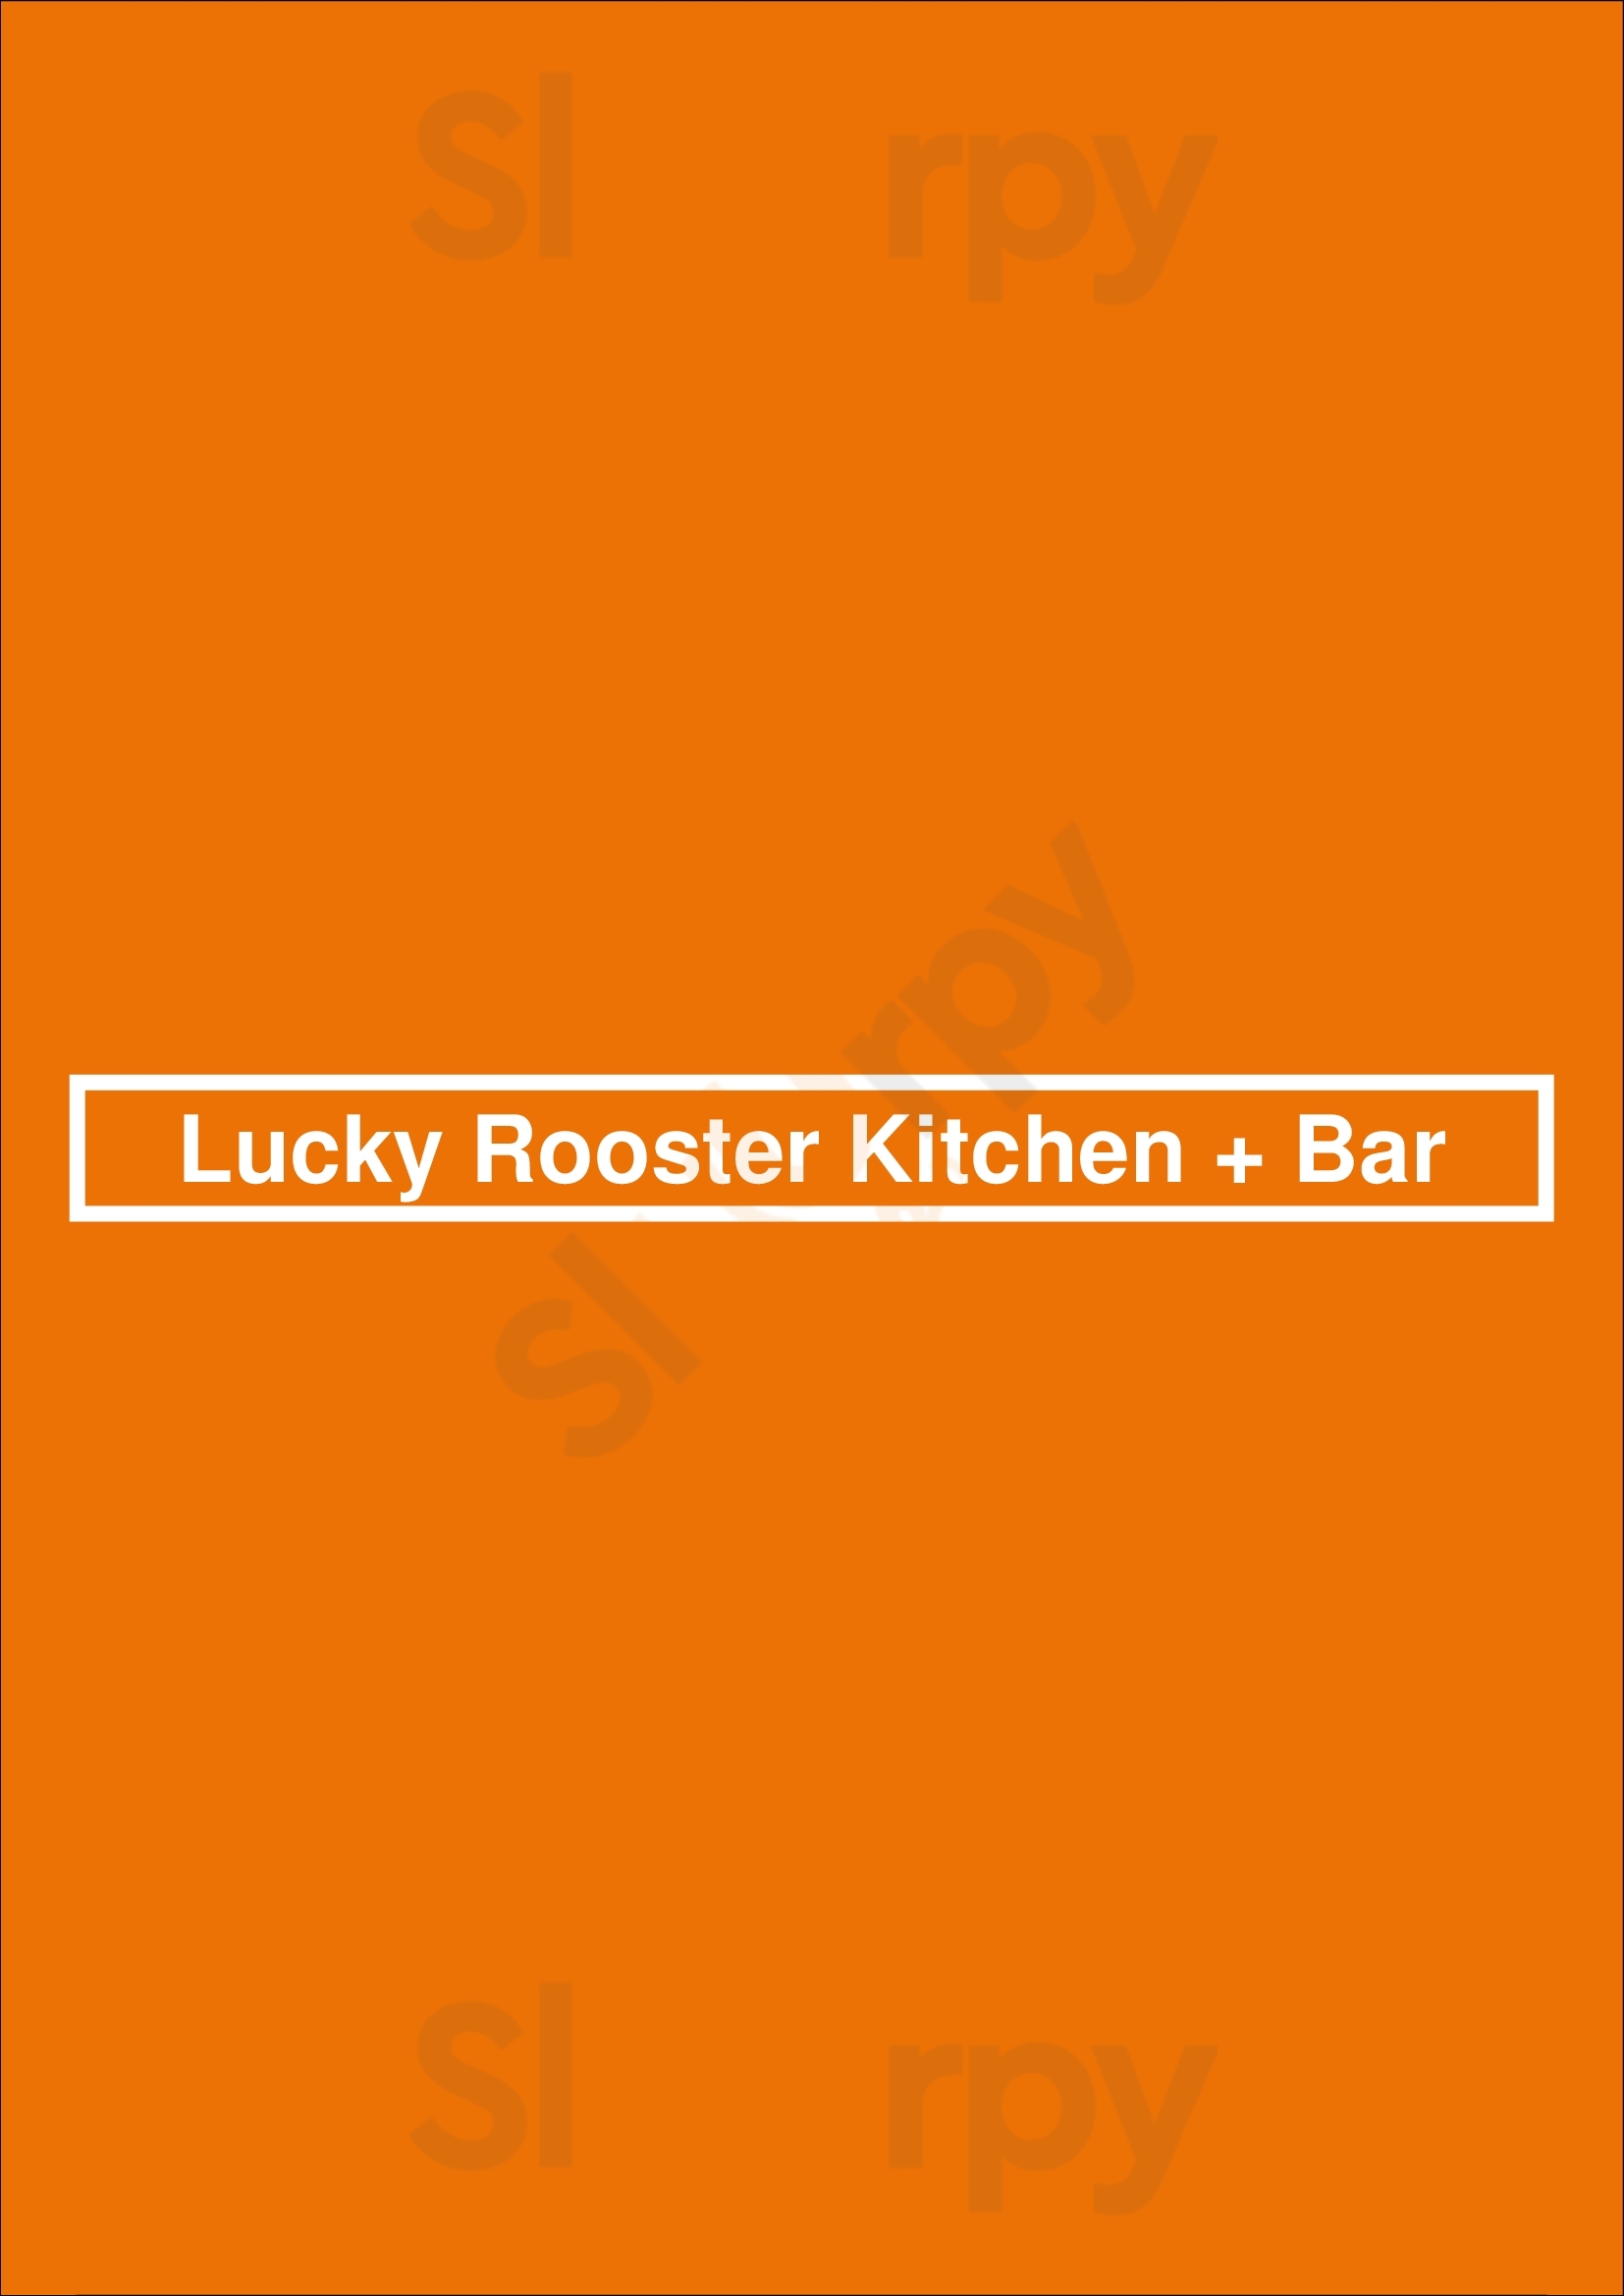 Lucky Rooster Kitchen + Bar Hilton Head Menu - 1